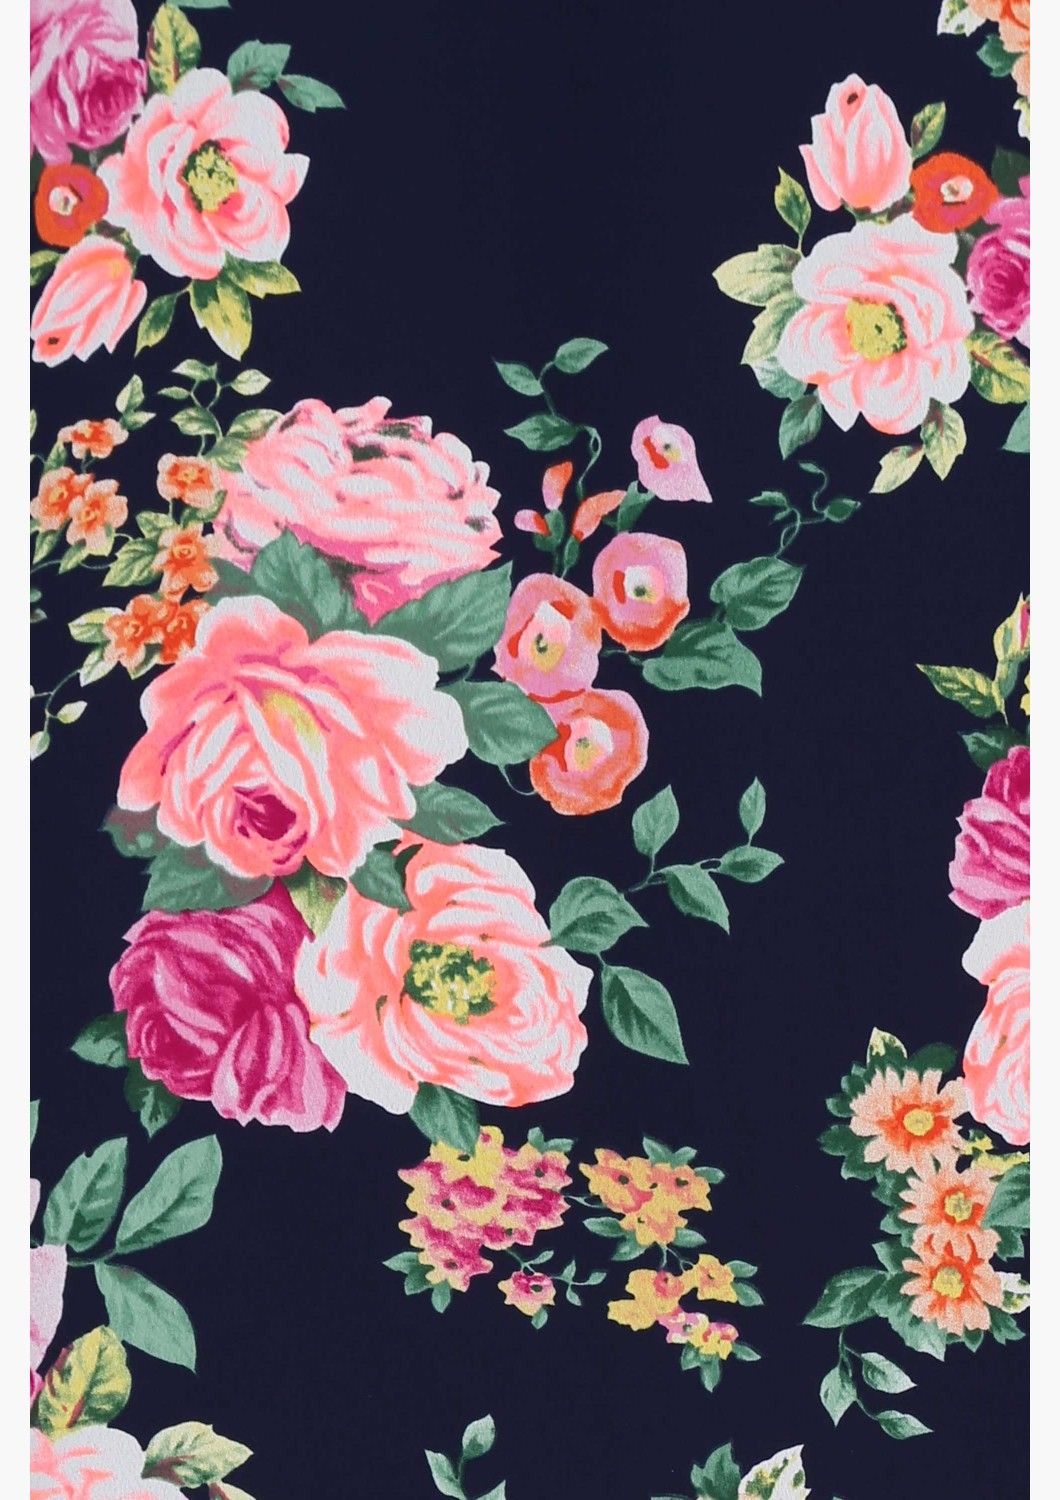 귀여운 꽃 무늬 벽지,분홍,검정,꽃,장미,무늬